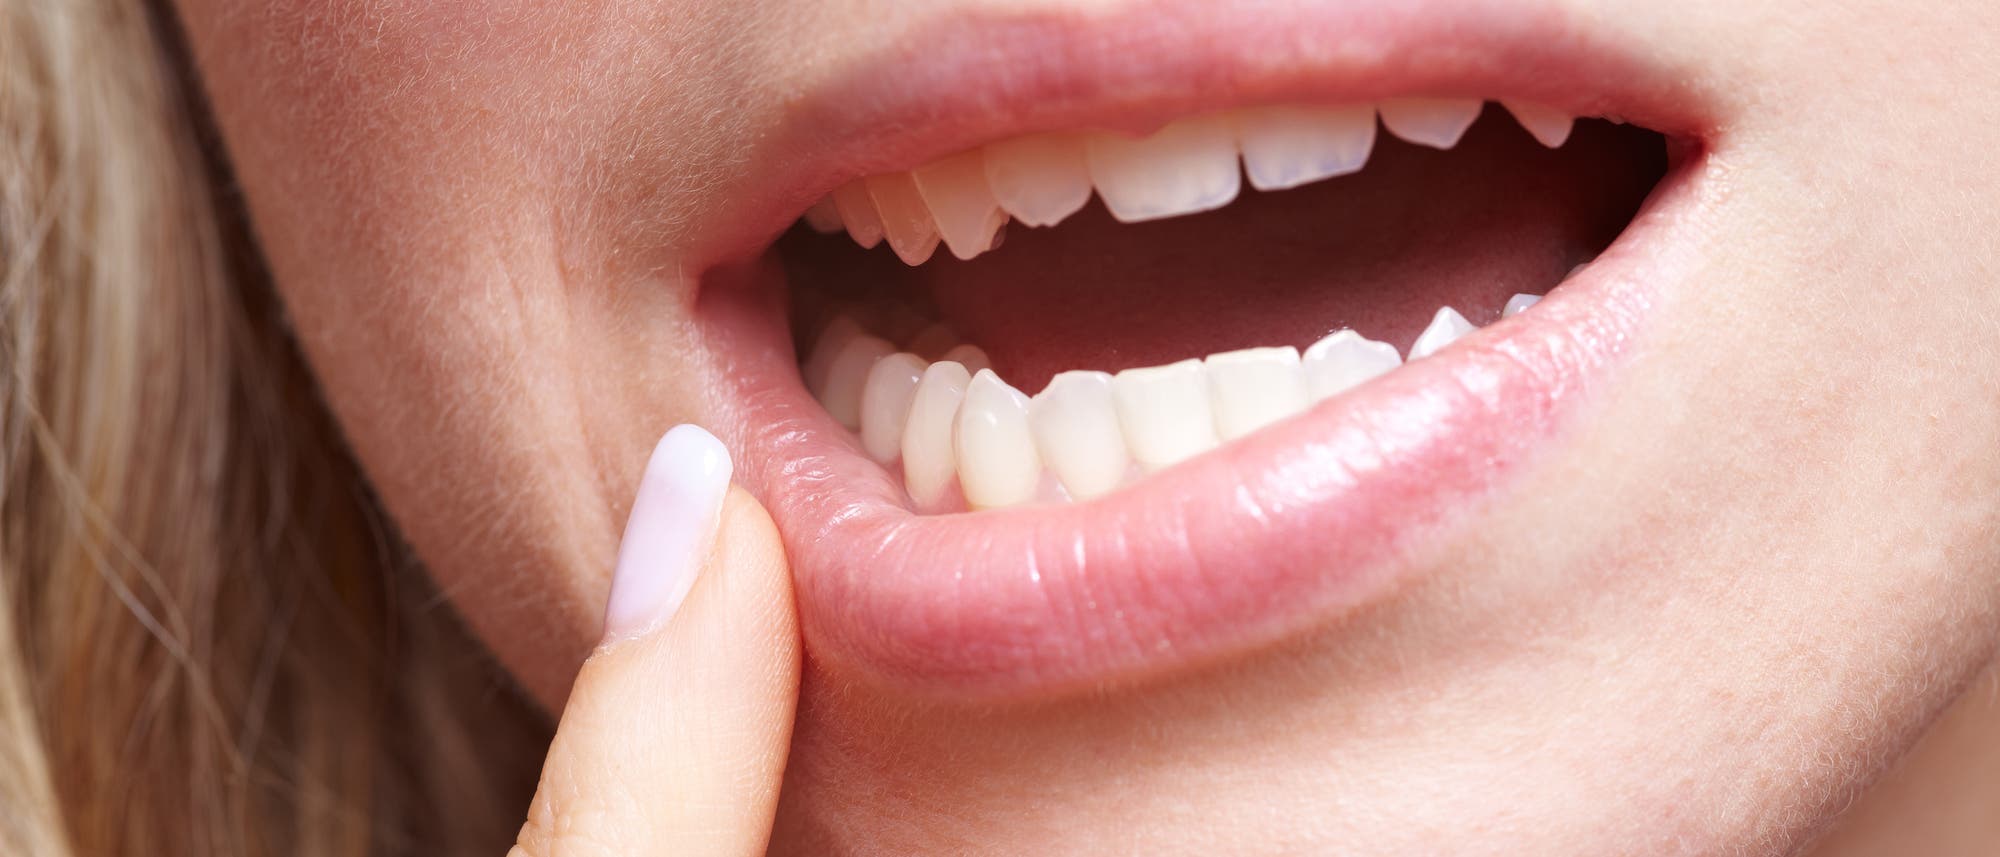 Frau mit Zahnfleischschmerzen